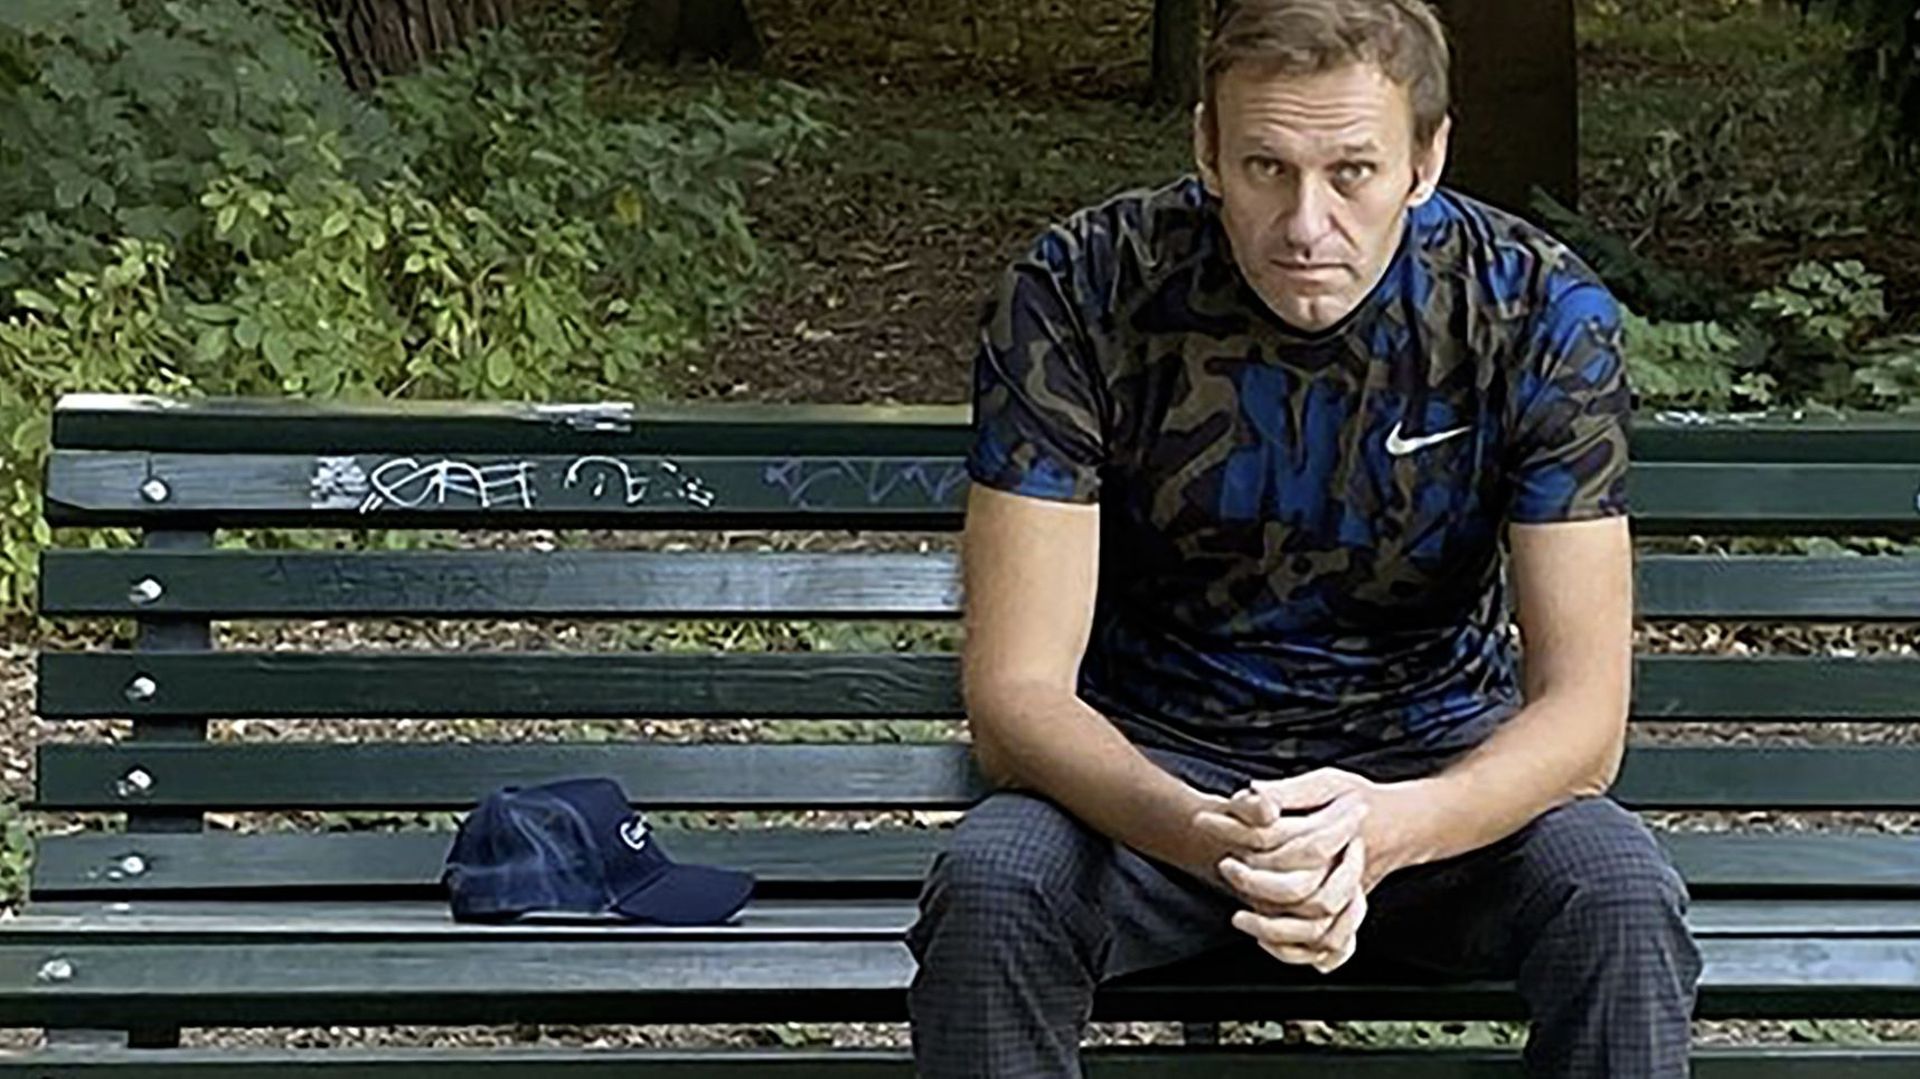 Droits de l'Homme : la Russie de nouveau condamnée par la CEDH pour "traitements dégradants" sur l'opposant Navalny